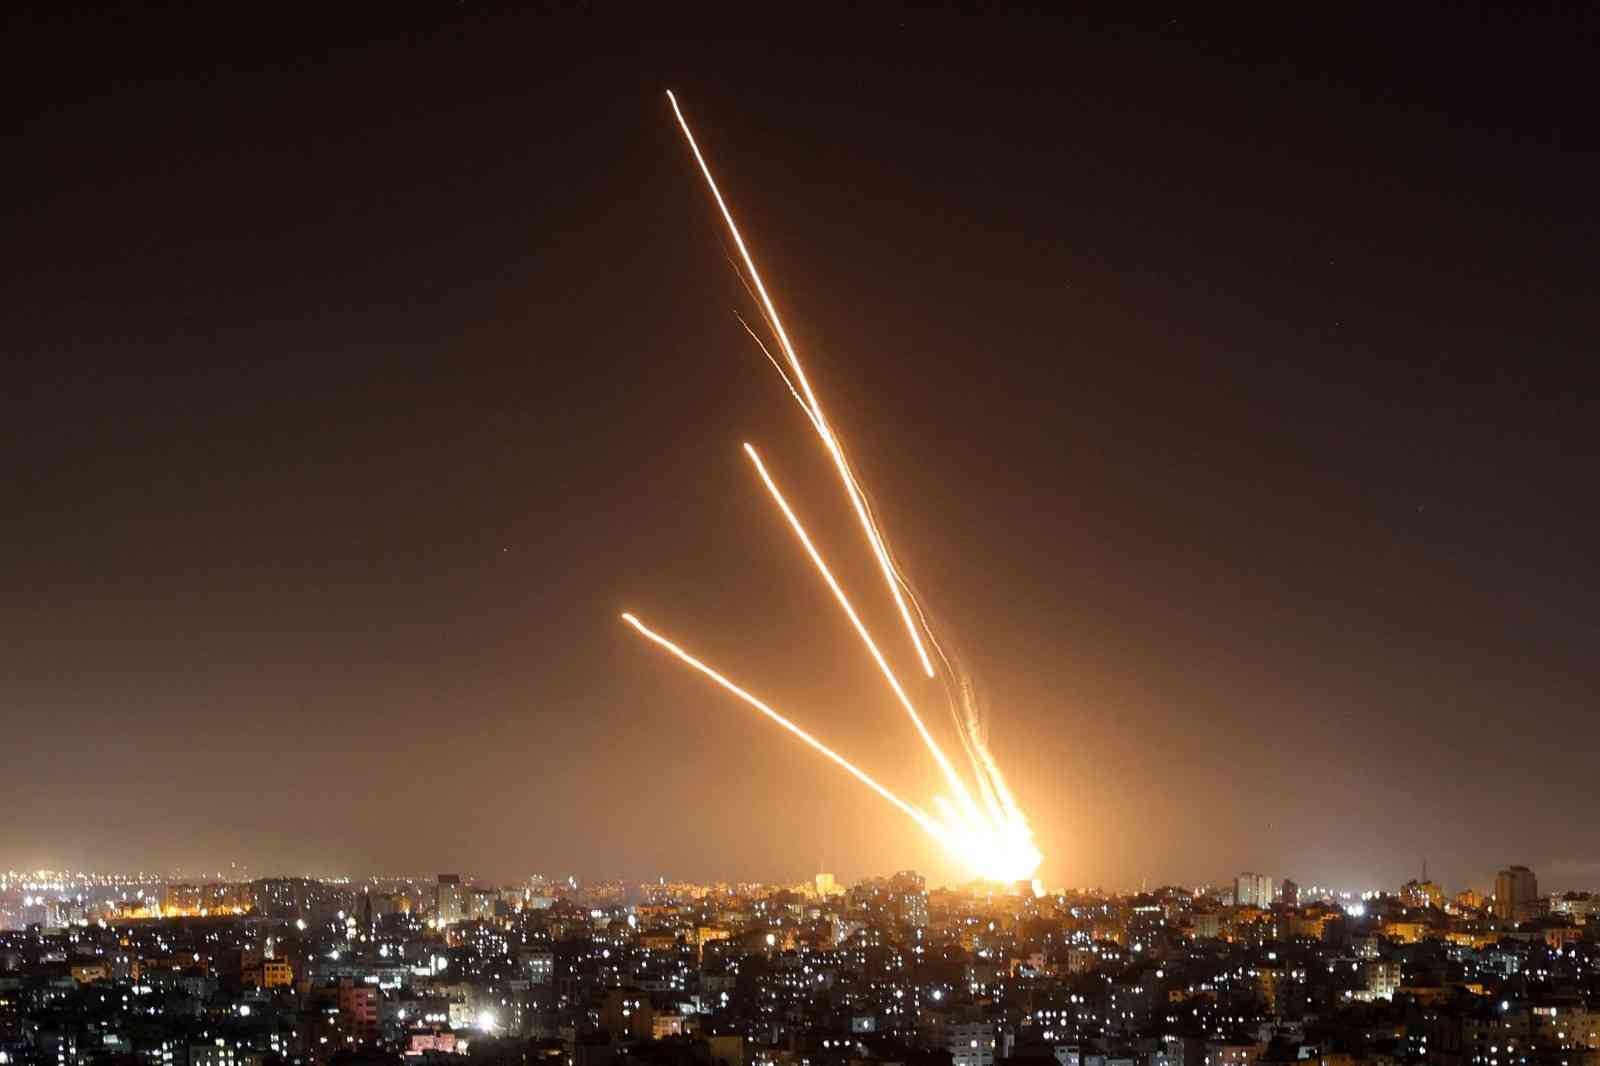 مشهد مهيب للحظة سقوط أحد صواريخ المقاومة في تل أبيب - فيديو